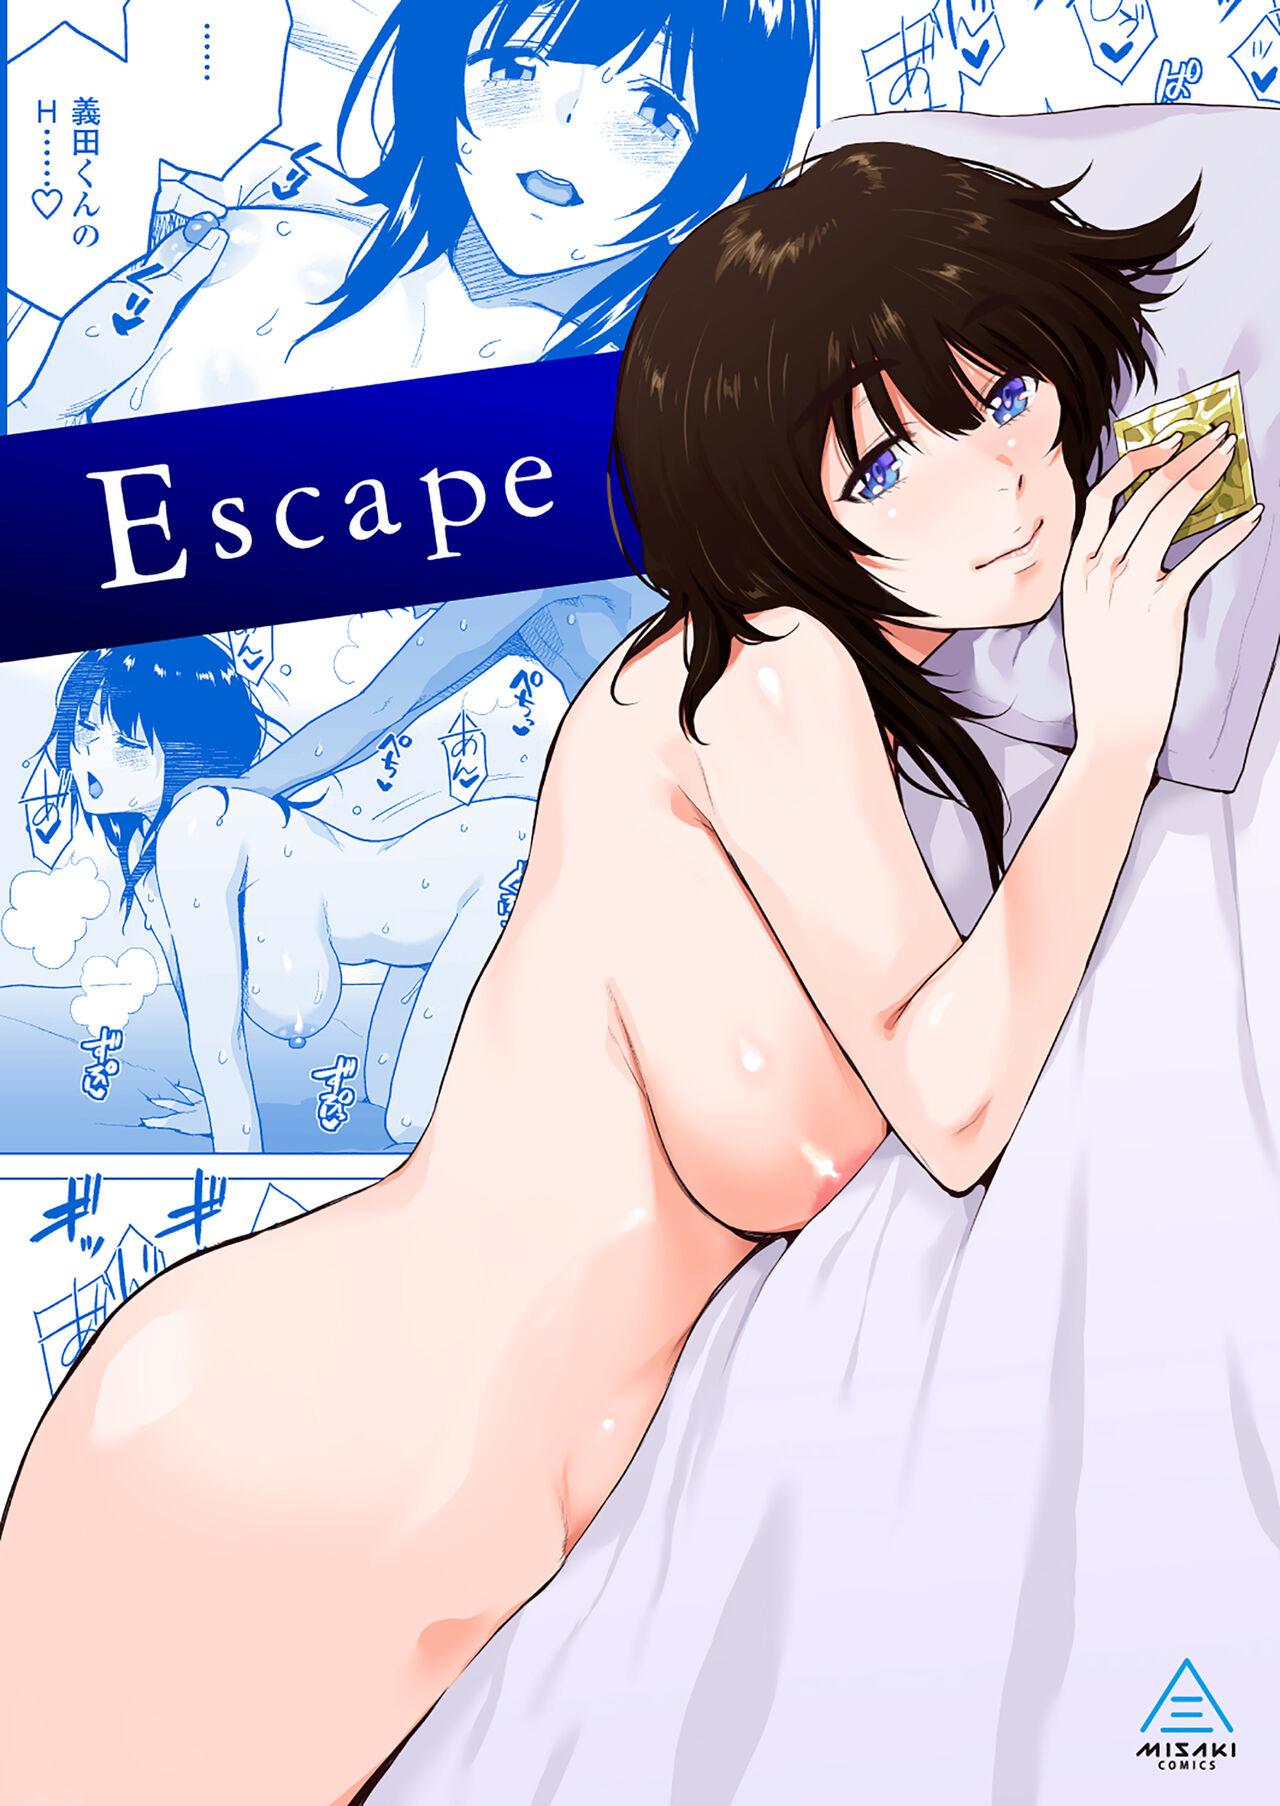 Escape [三崎 (桐原湧)]  0